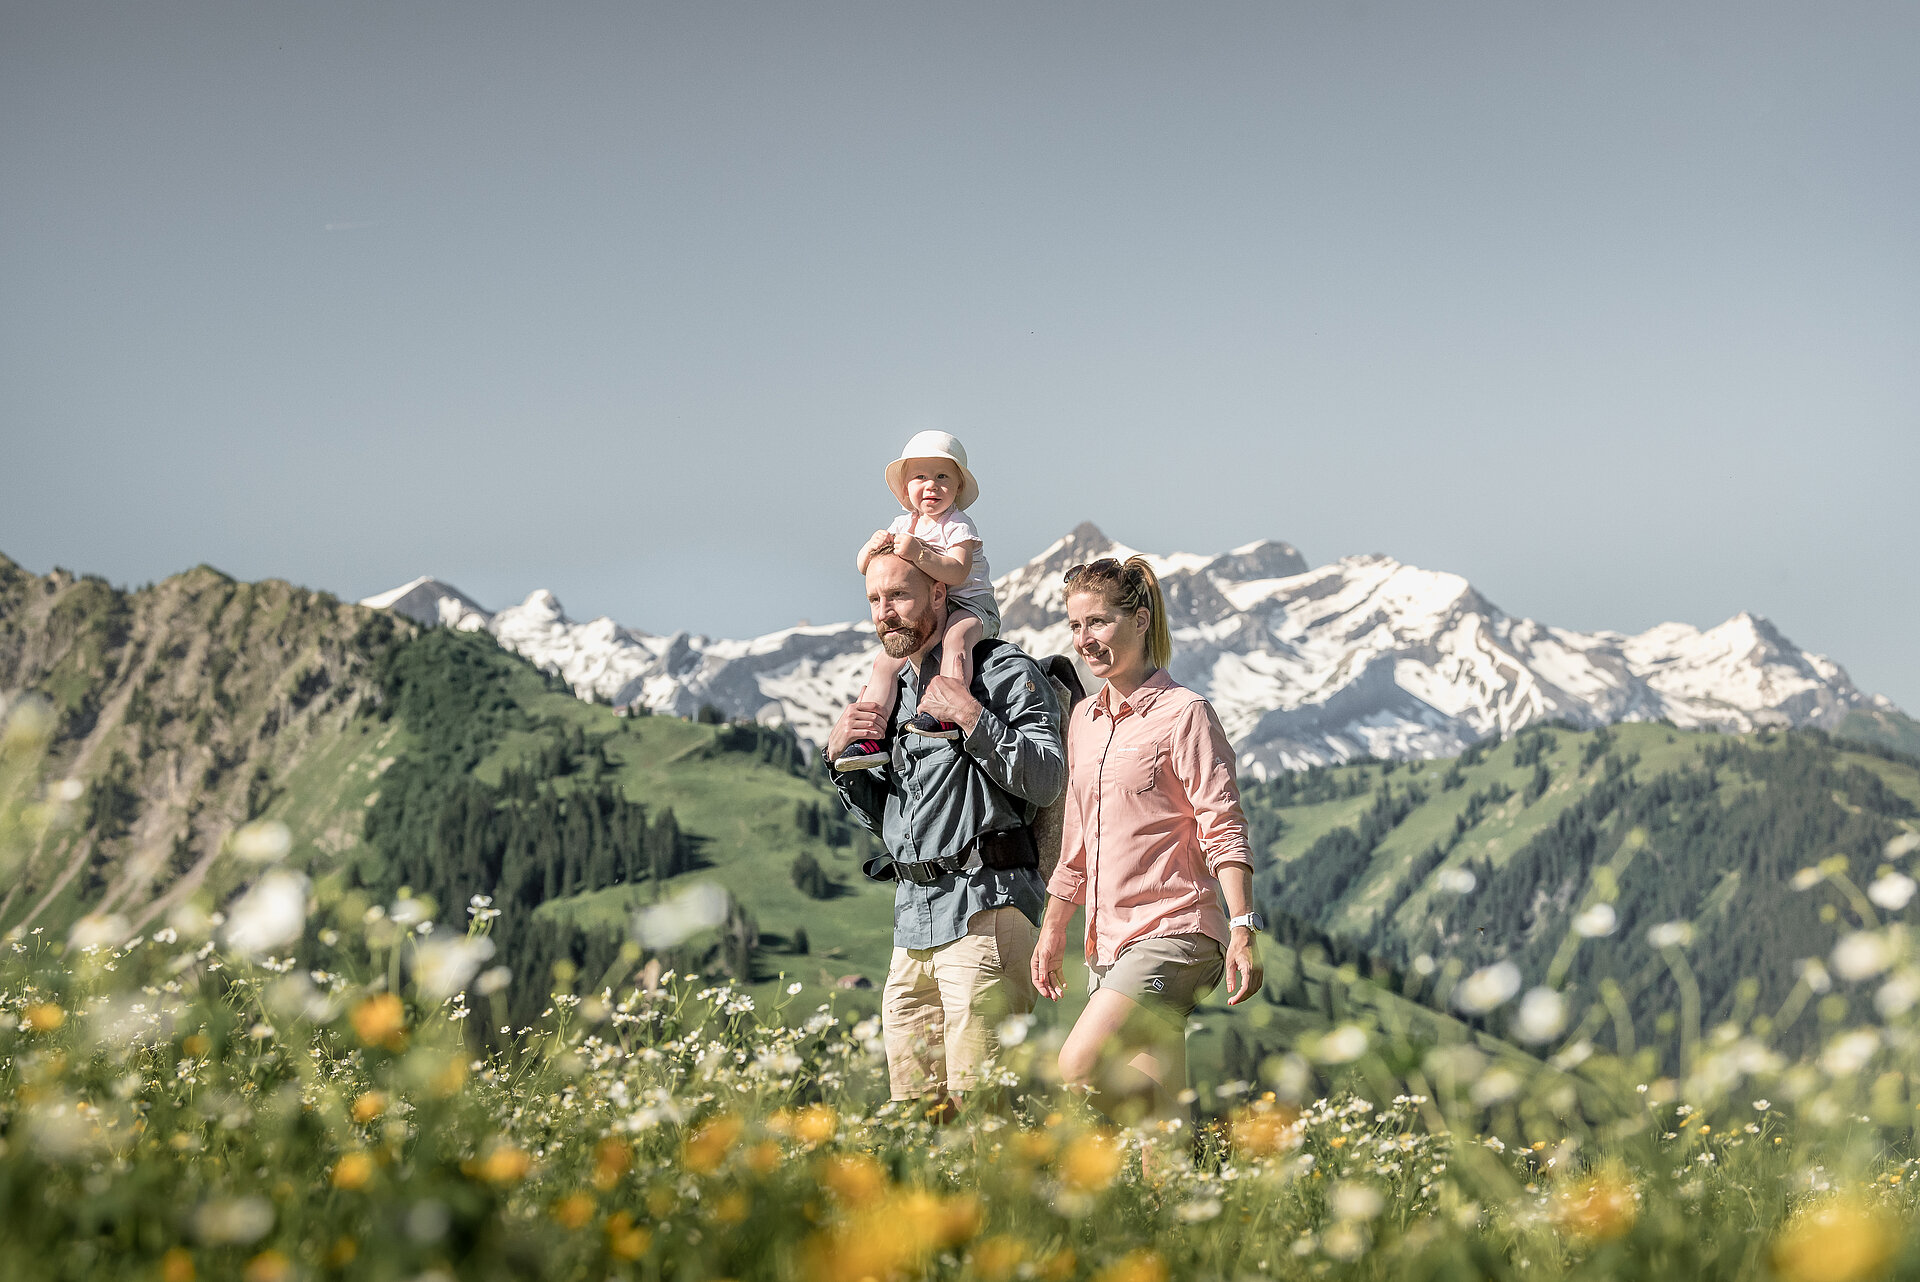 <p>Familie mit einem kleinen Kind wandert durch die Blumenwiesen bei sommerlichem Wetter.&nbsp;</p>